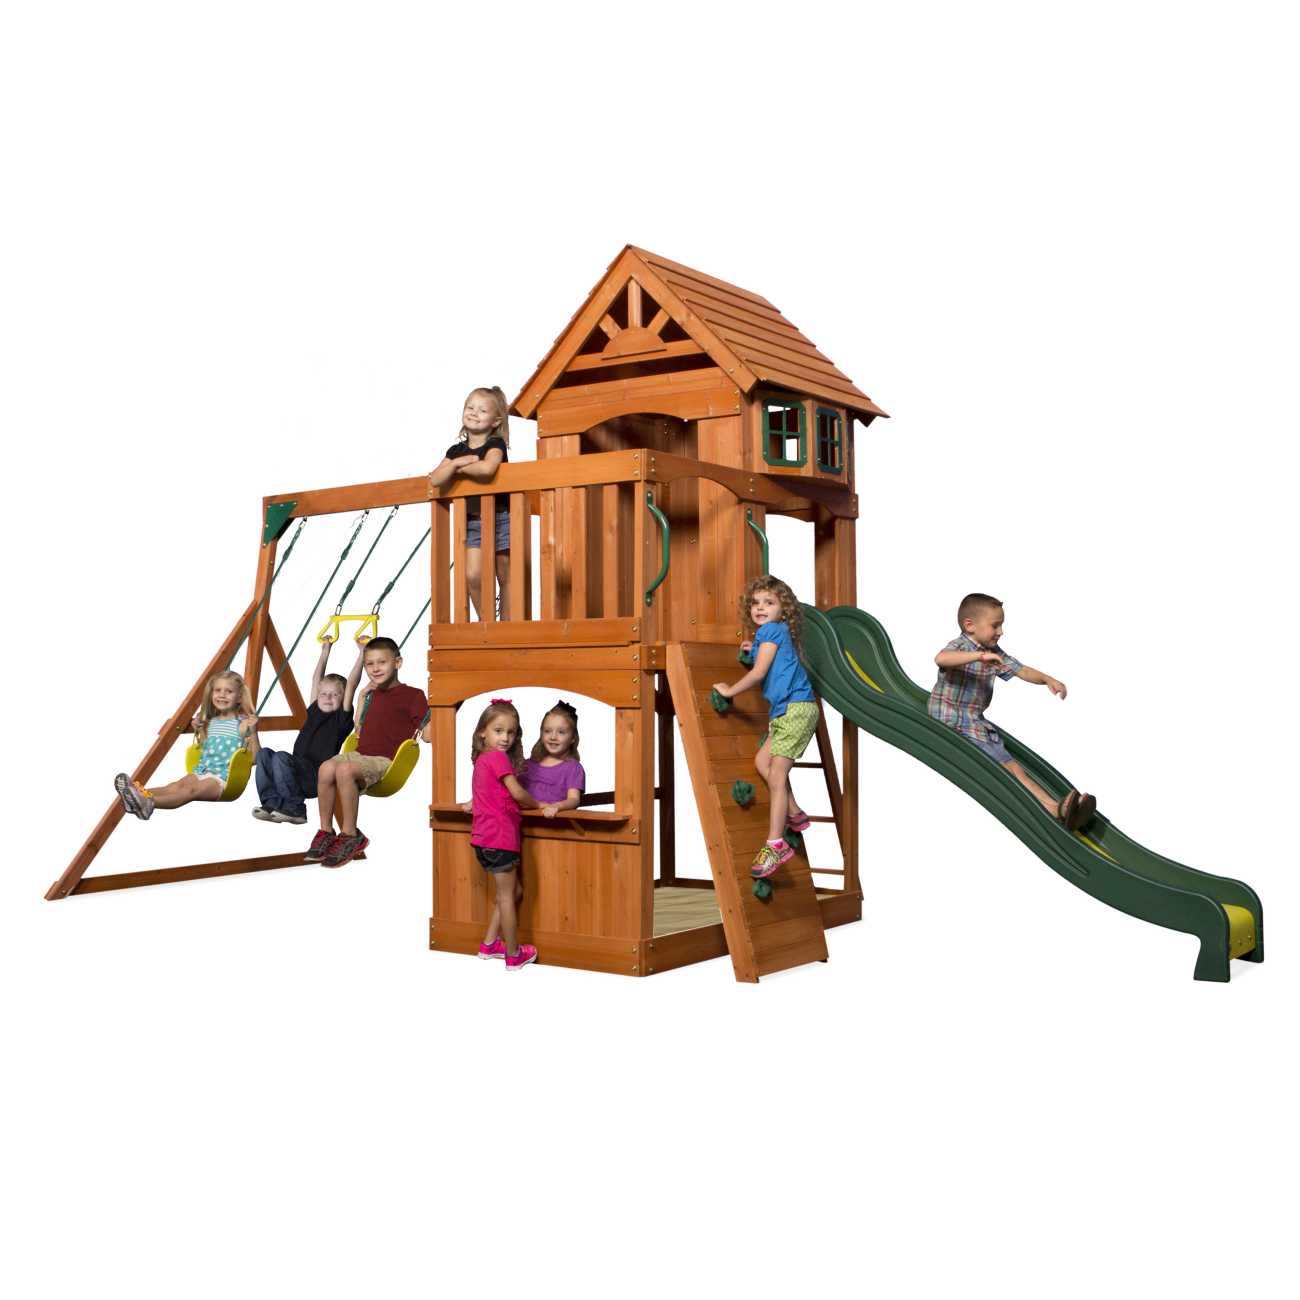 Spielturm Atlantic von Backyard, mit Rtusche und Schaukel für Kinder